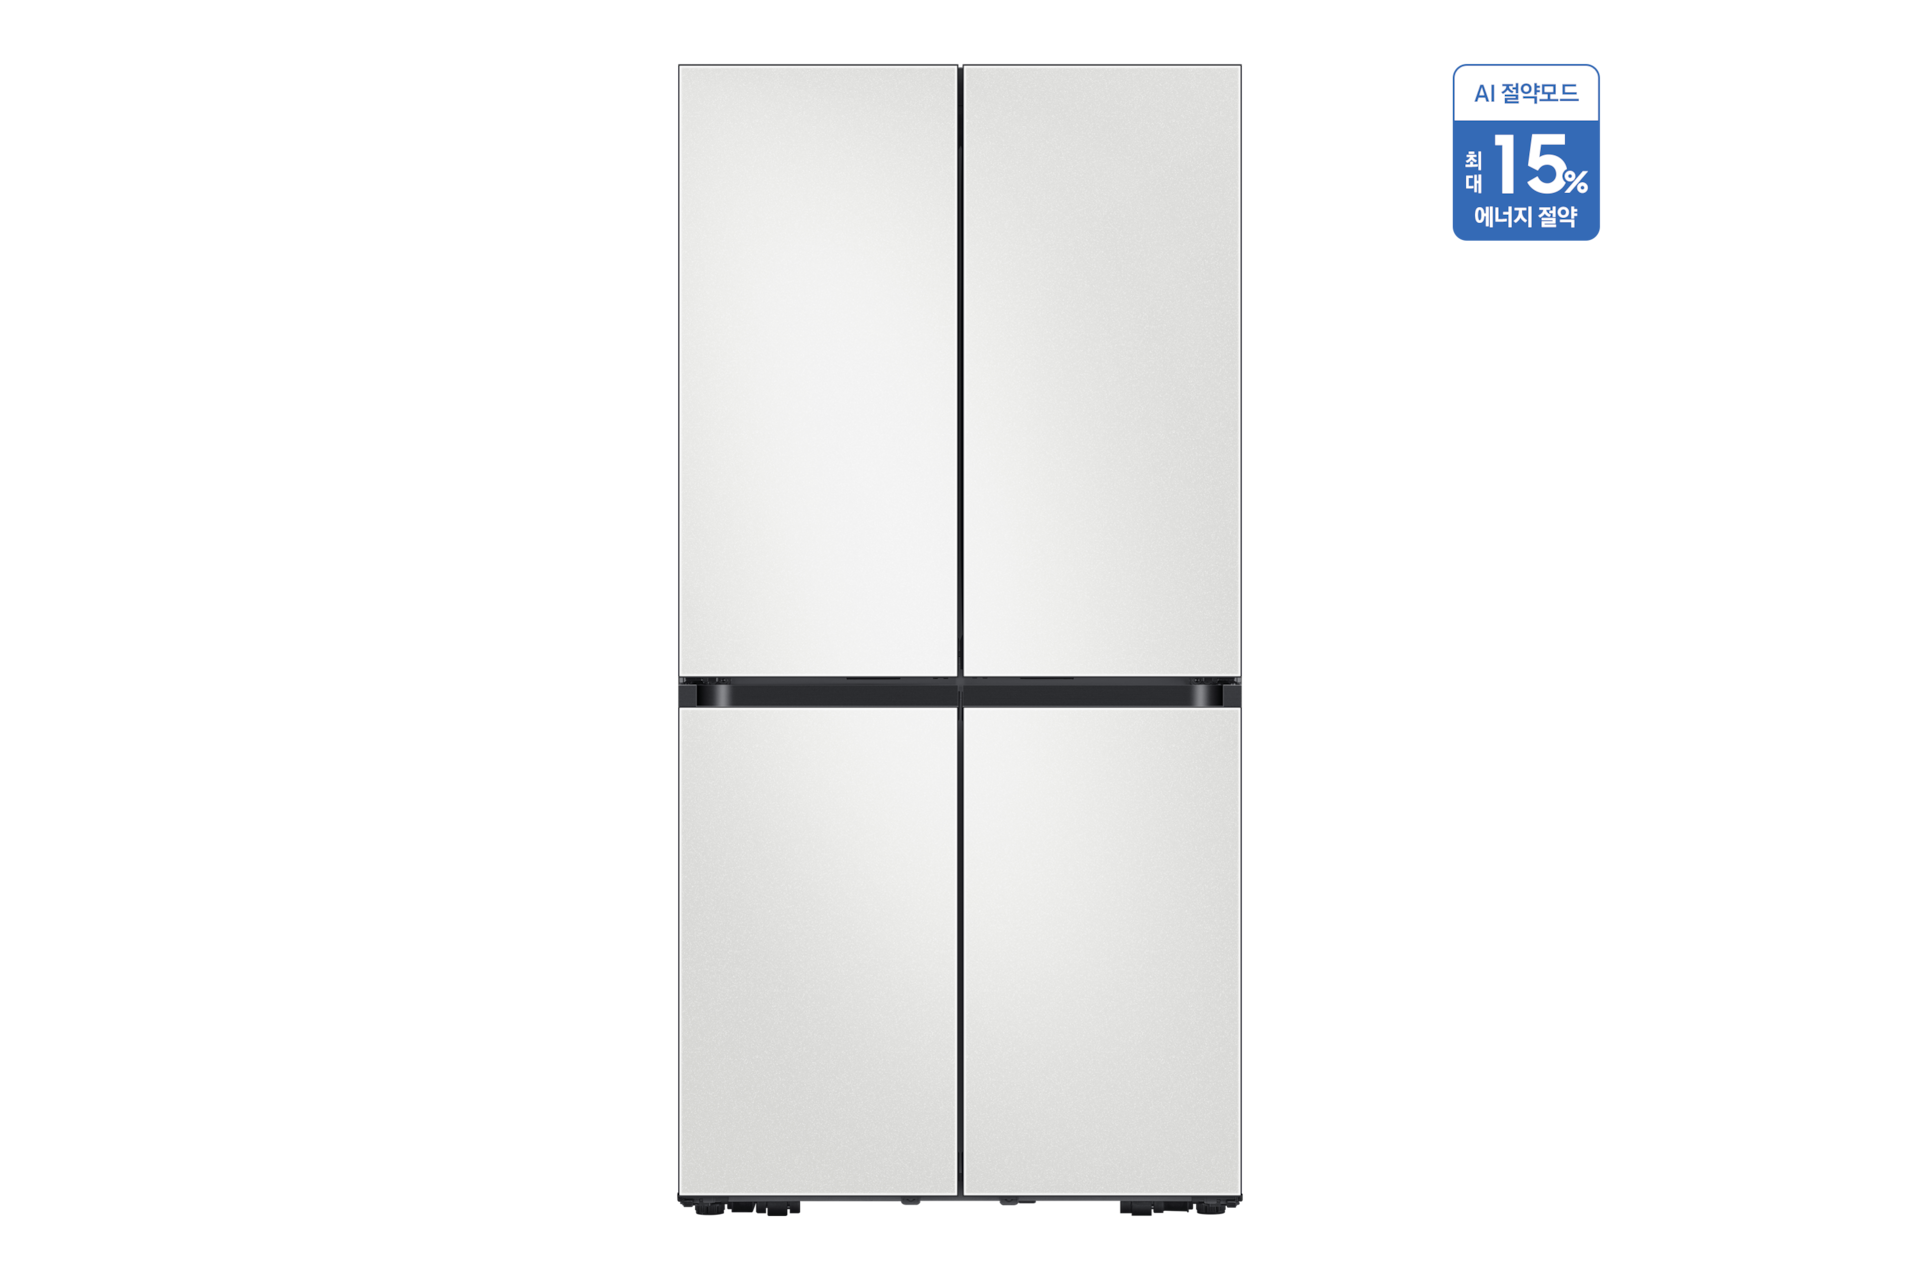 BESPOKE 냉장고 4도어 코타 화이트 정면, 우측 상단 AI 절약모드 최대 15% 에너지 절약 태그